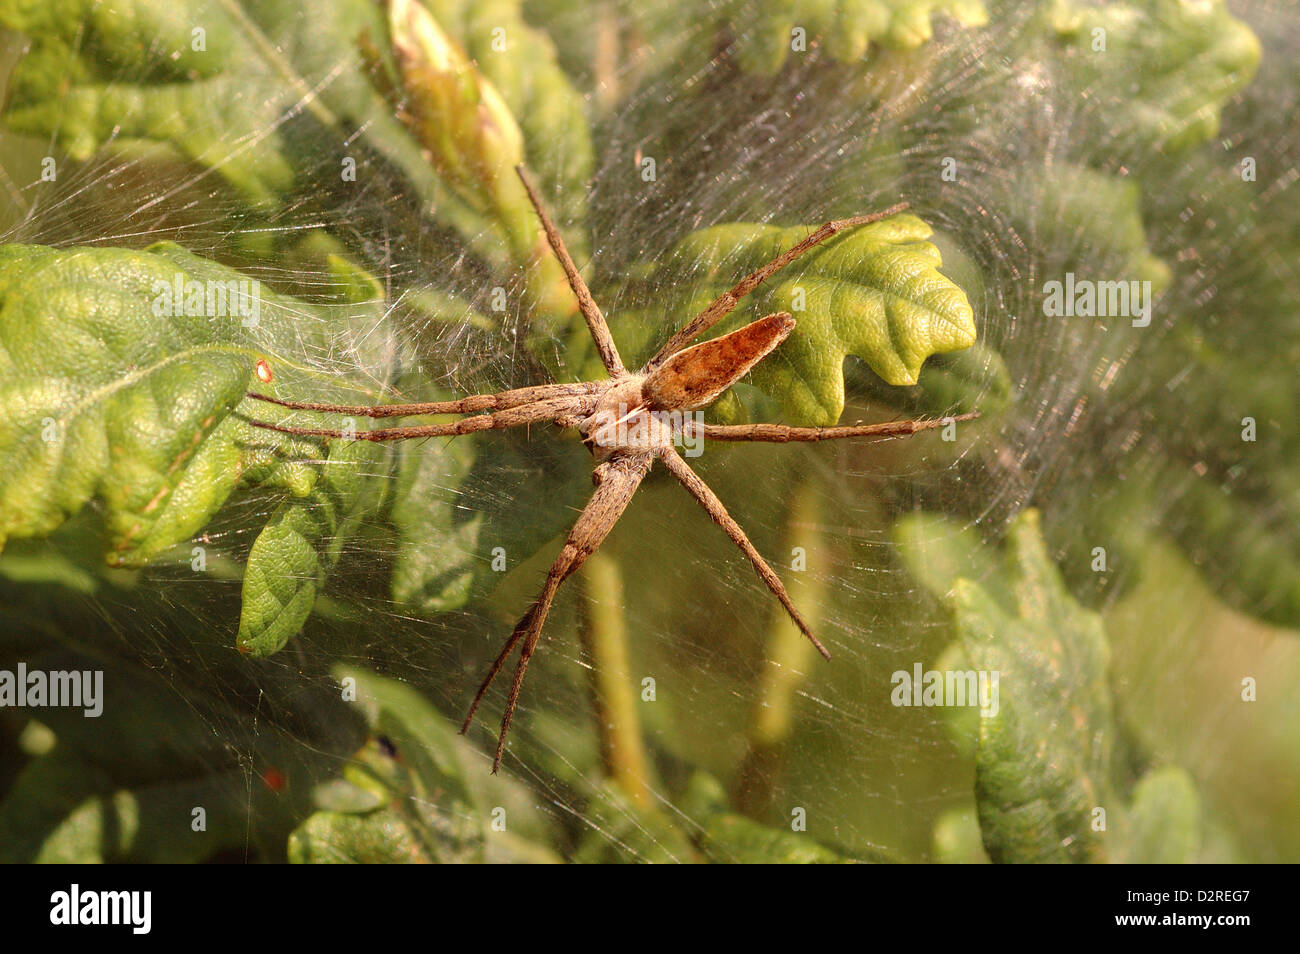 Vivaio web / Wedding-presente spider (Pisaura mirabilis : Pisauridae), femmina di guardia dopo la deposizione delle uova, UK. Foto Stock